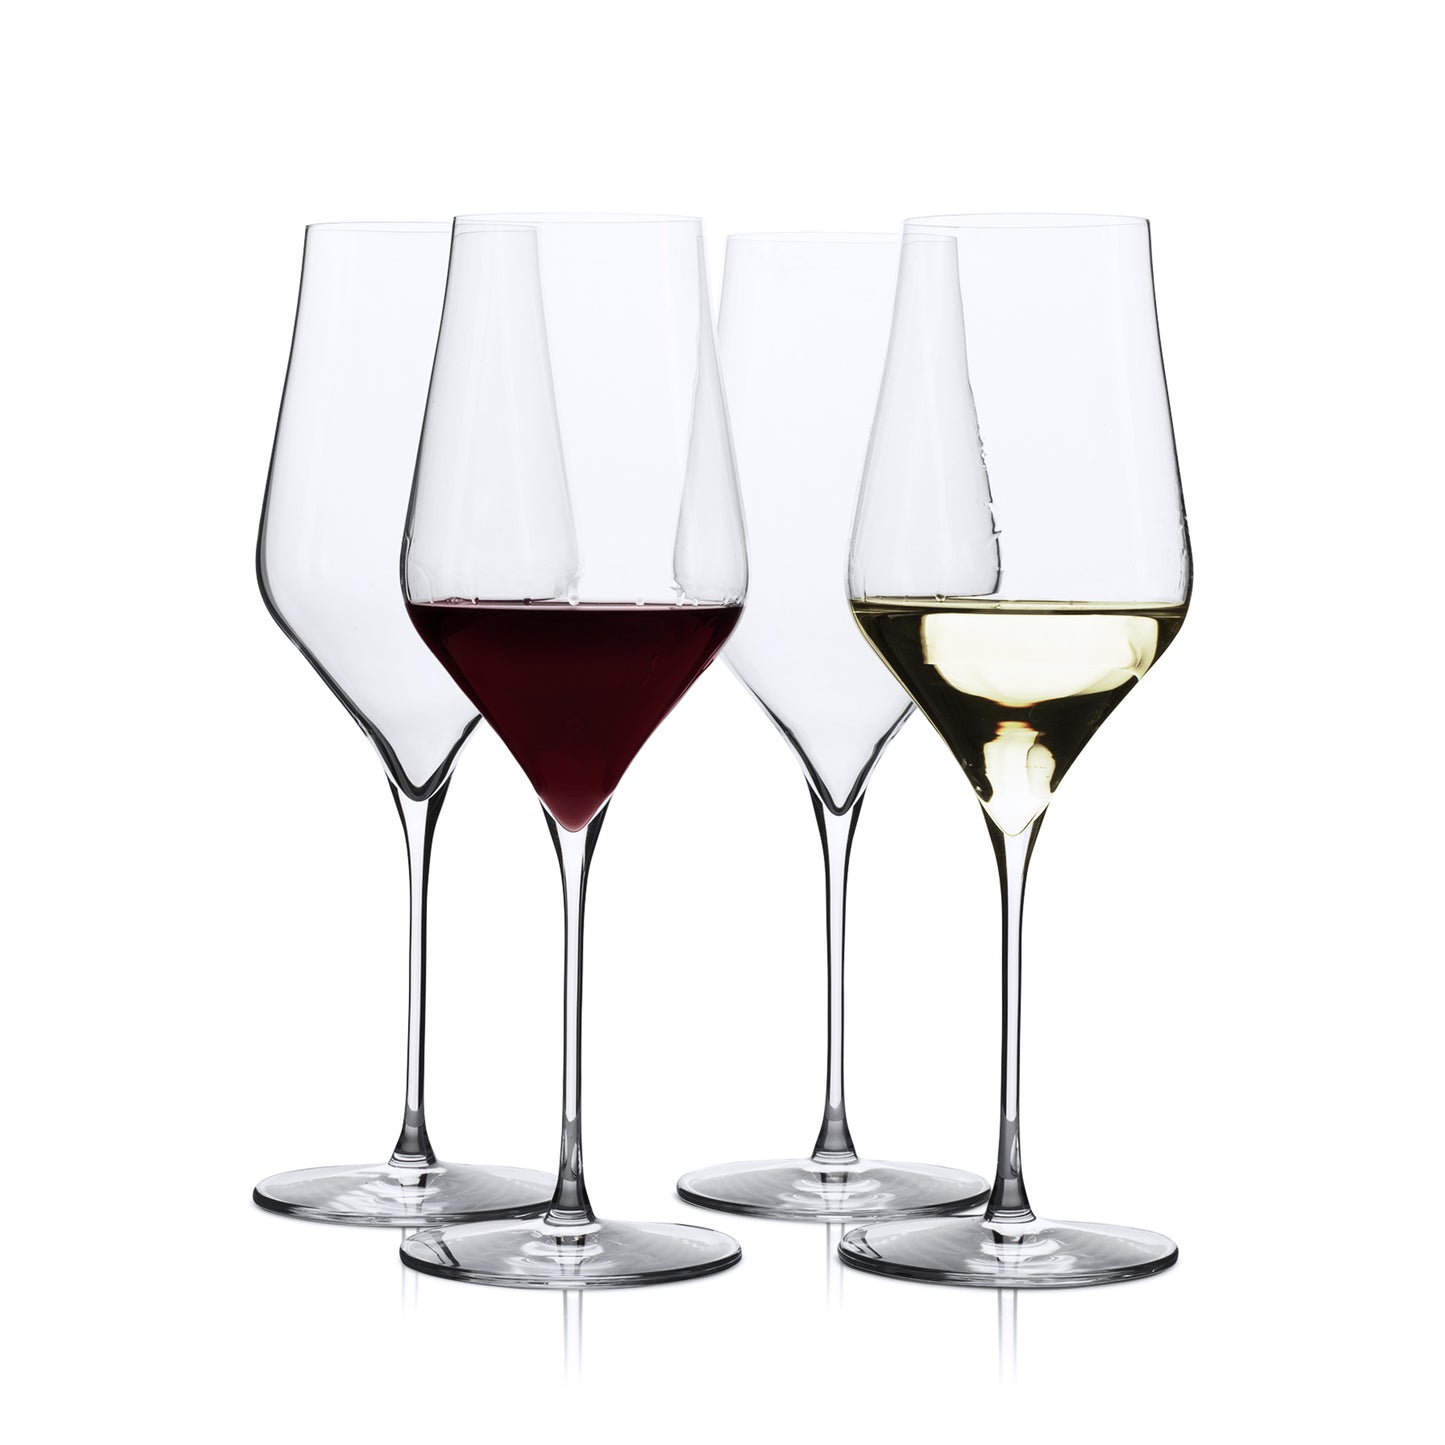 DUKE Wine Glasses. Set of 4 Glasses. (520ml / 17.6oz)